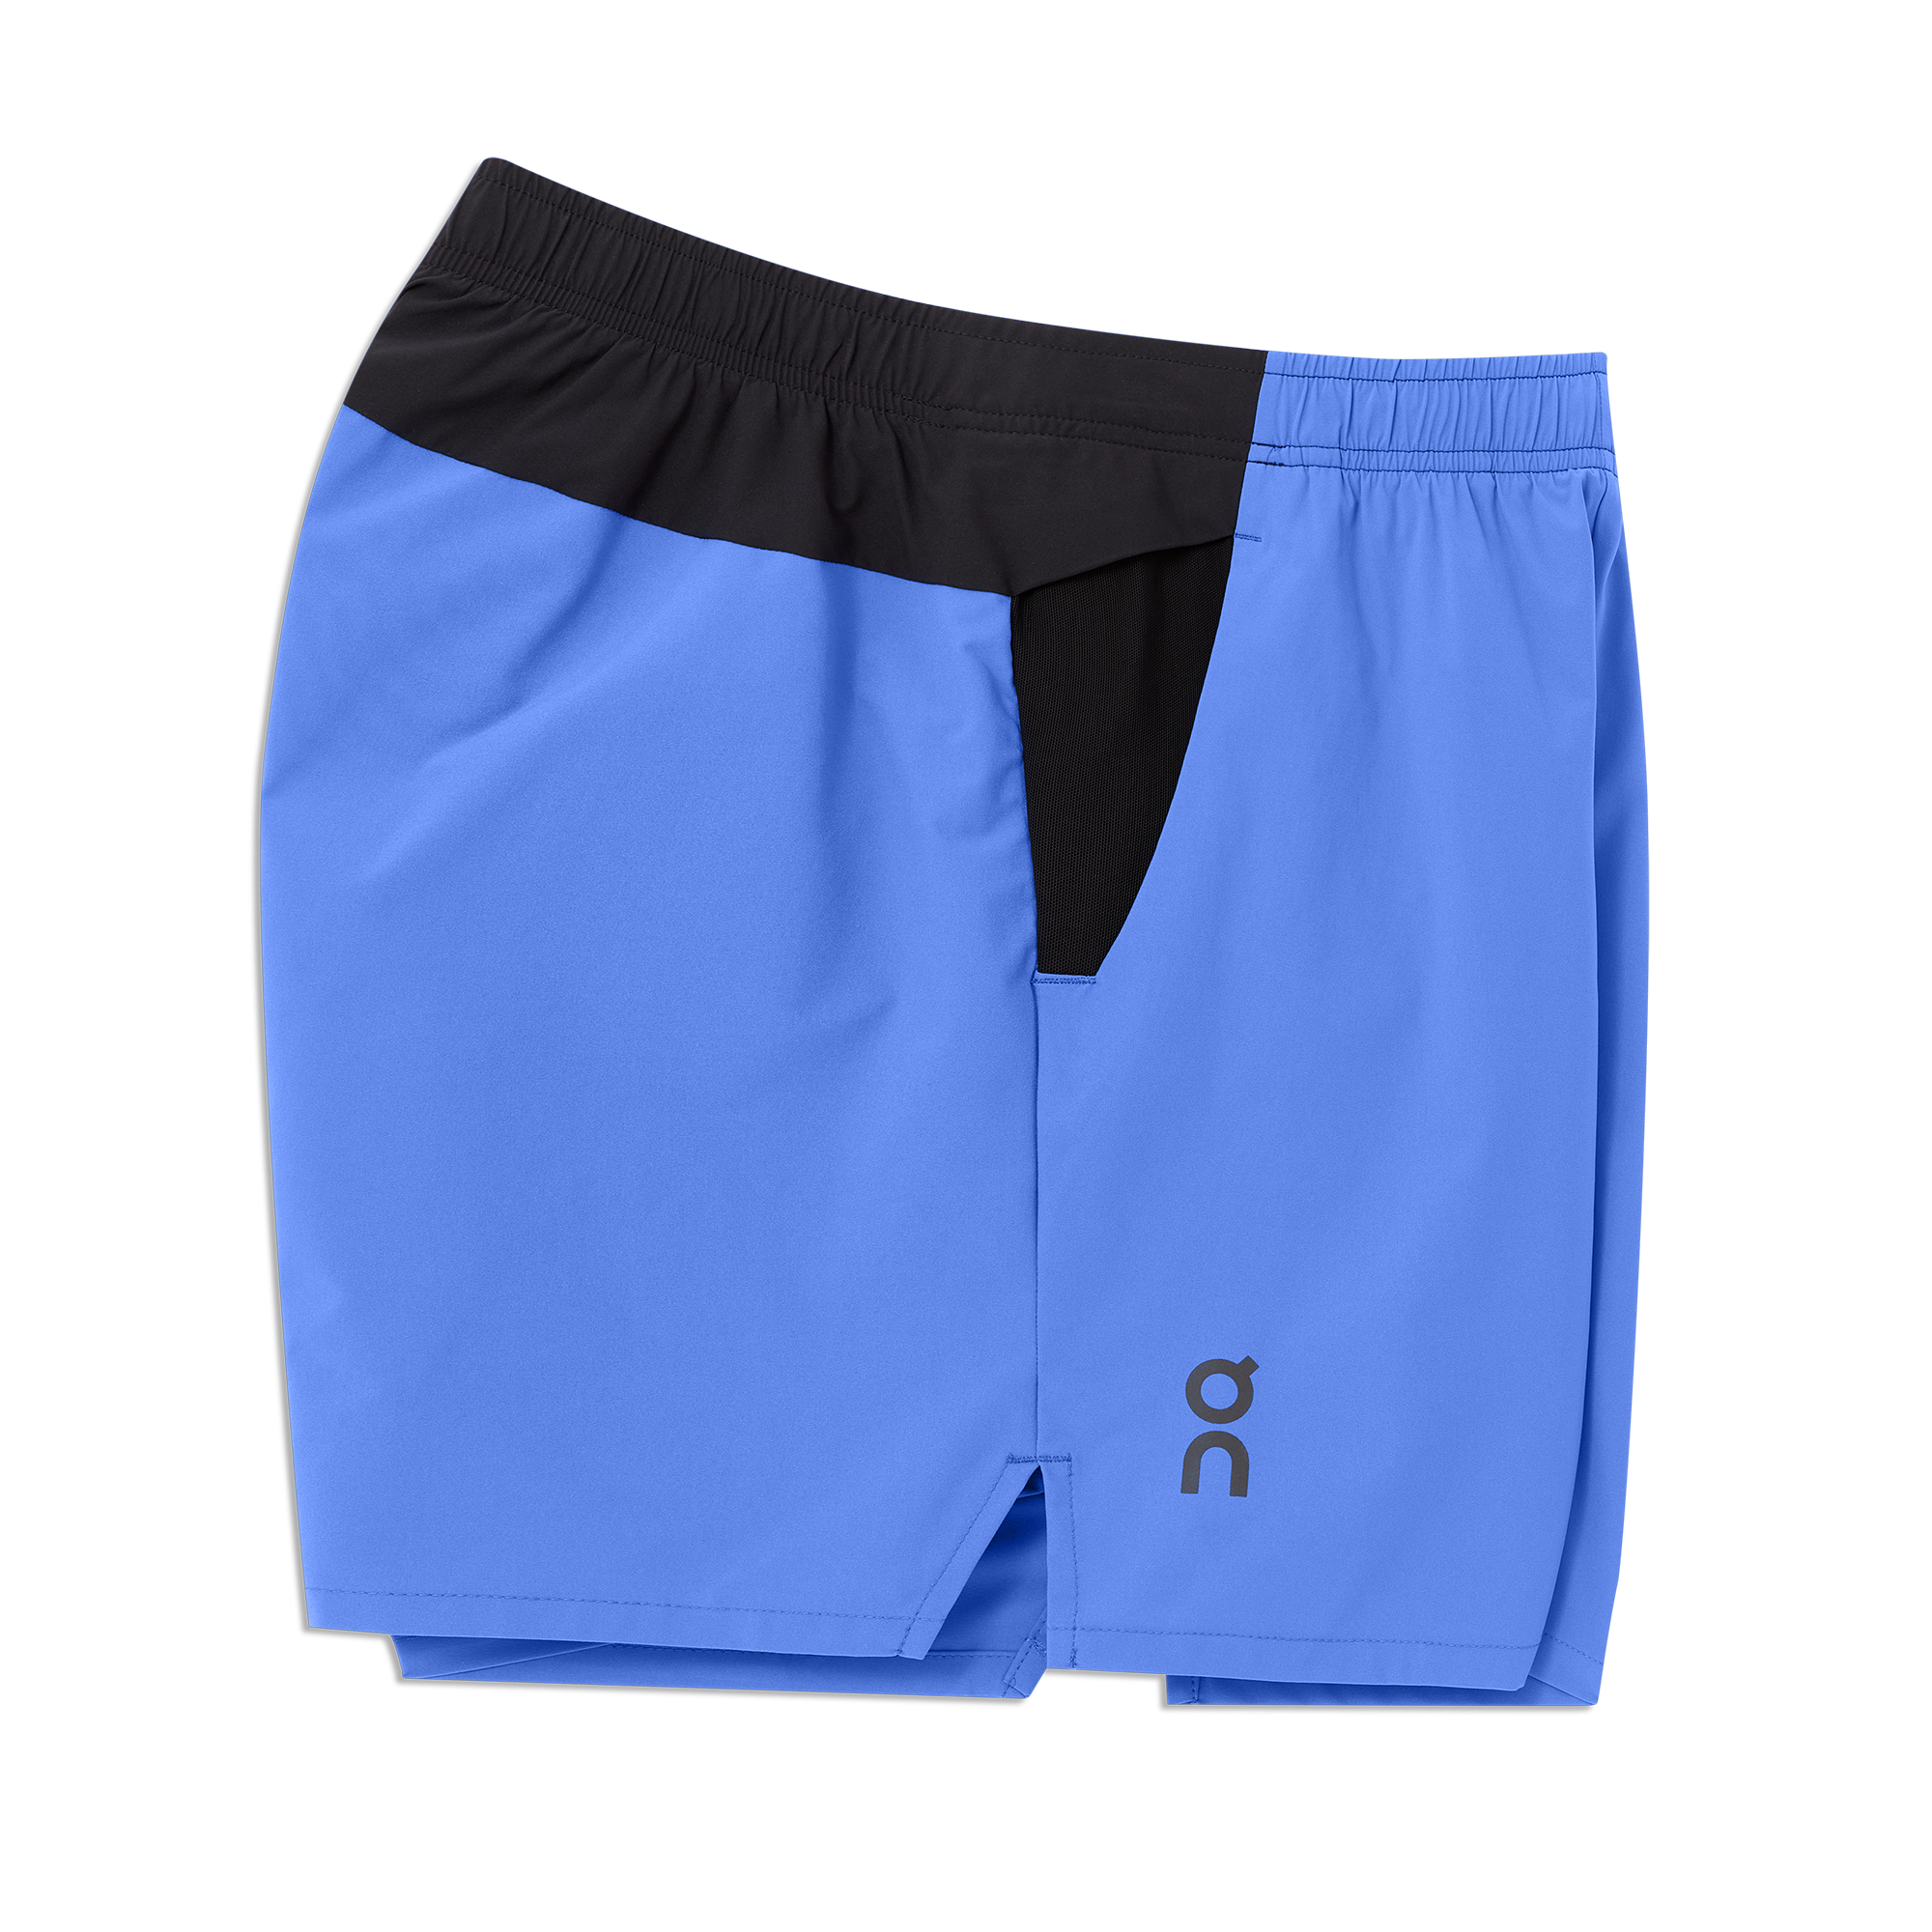 Essential 2-in 1 Shorts Men, Navy Blue